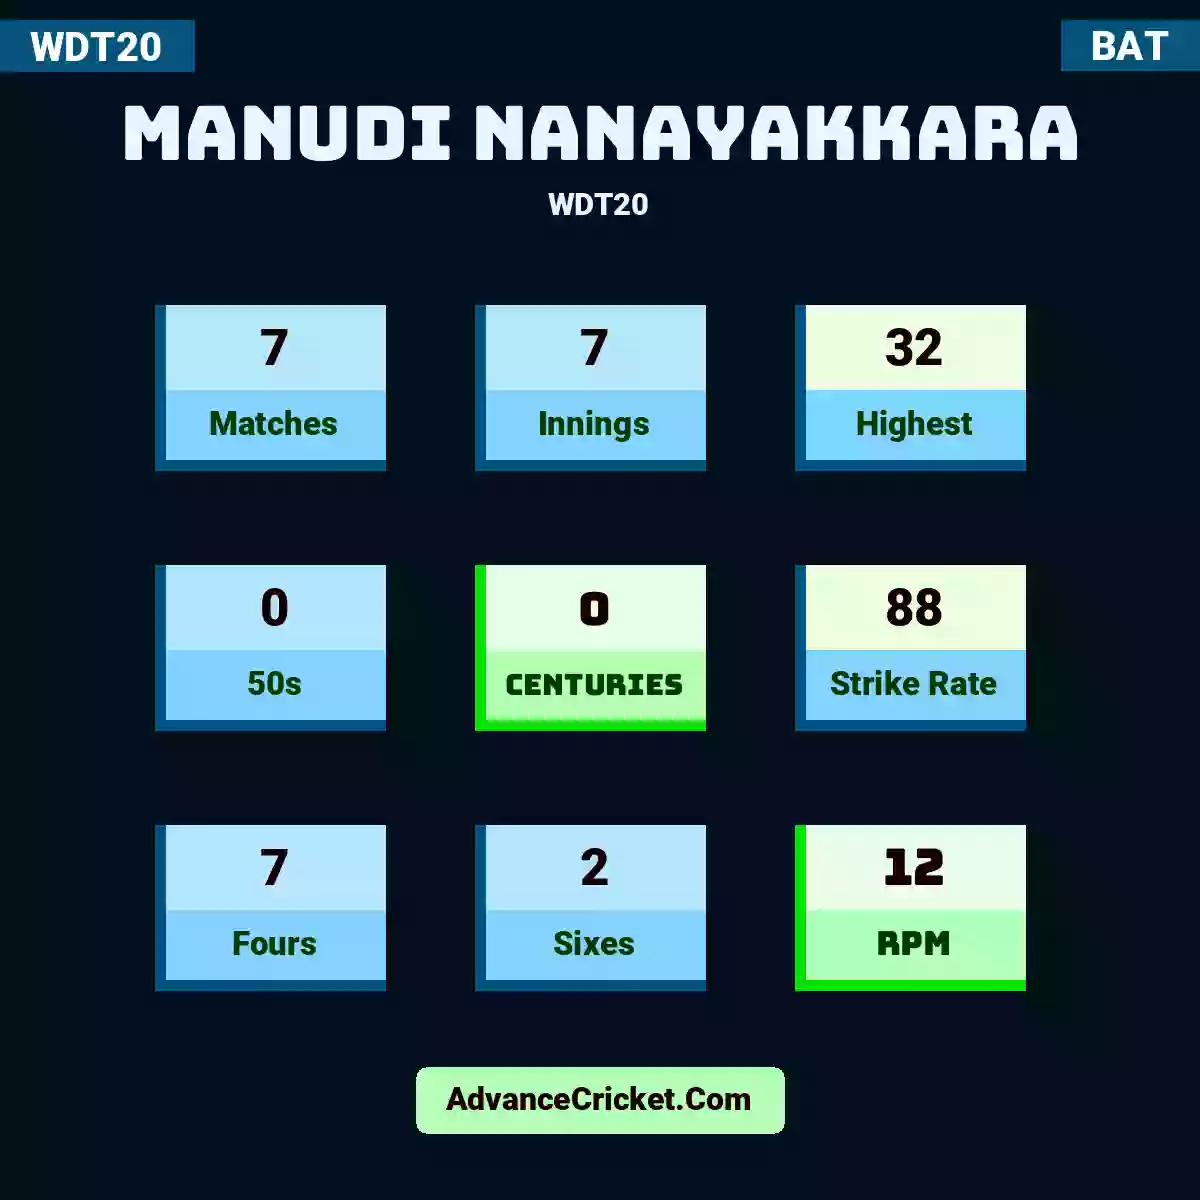 Manudi Nanayakkara WDT20 , Manudi Nanayakkara played 7 matches, scored 32 runs as highest, 0 half-centuries, and 0 centuries, with a strike rate of 88. M.Nanayakkara hit 7 fours and 2 sixes, with an RPM of 12.